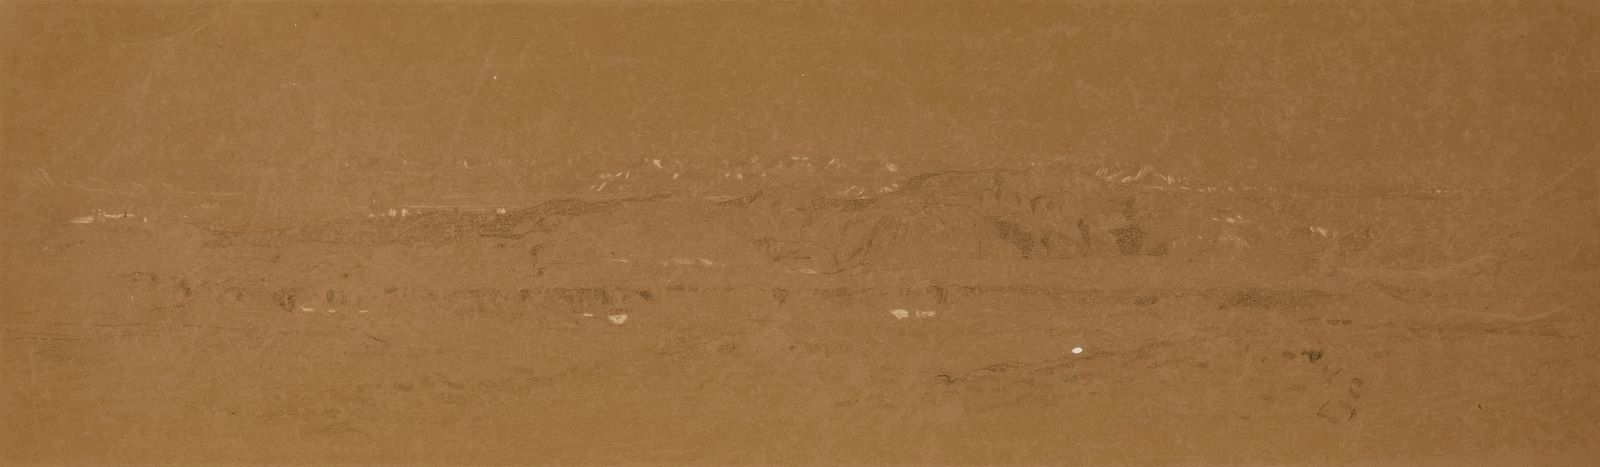 Vue du Mokatan, Le Caire (titre récent) ; Paysage montagneux en Orient (titre ancien)